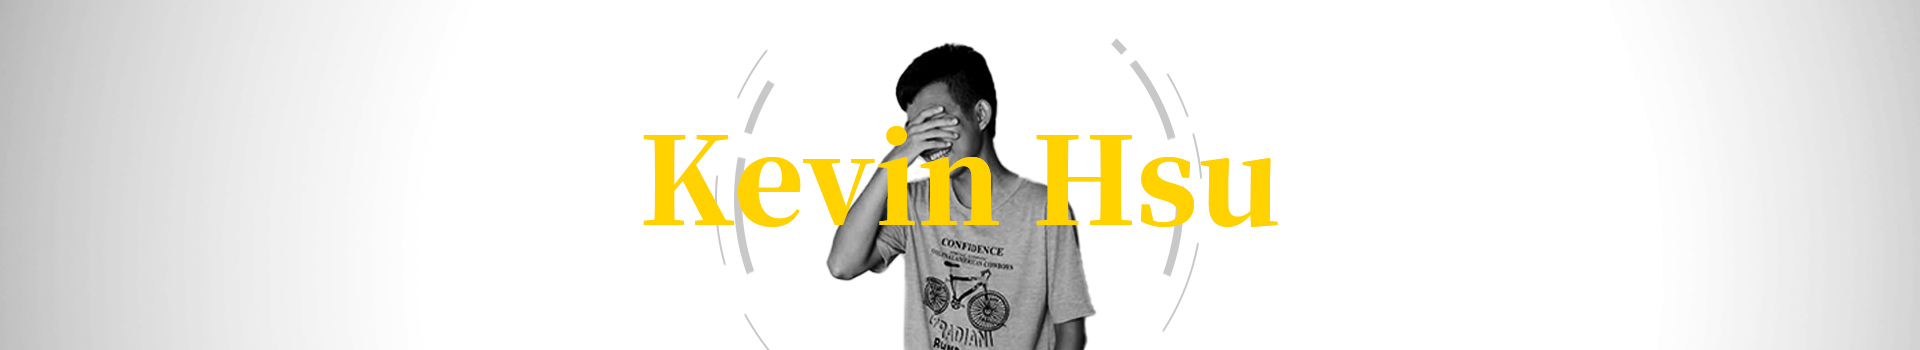 Kevin Hsu